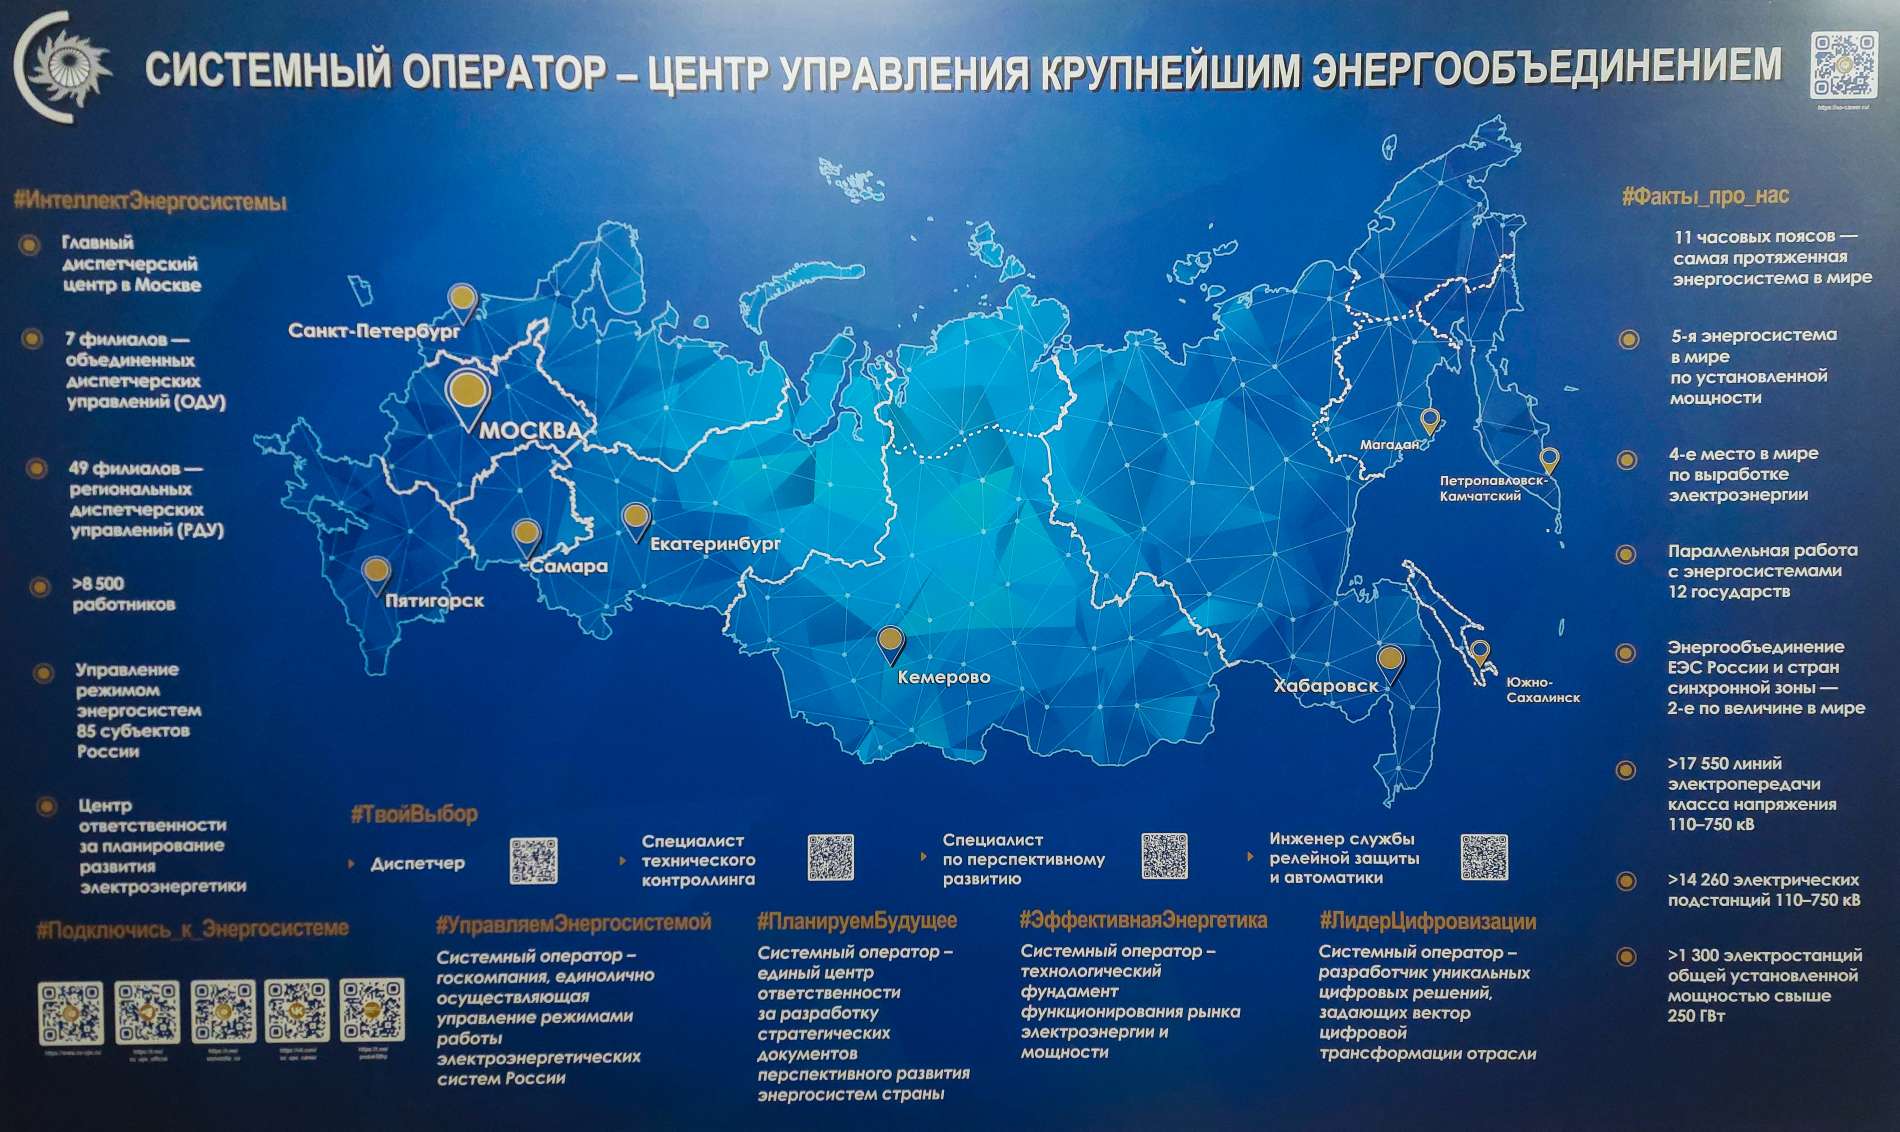 Информационный стенд Системного оператора появился в Институте энергетики Санкт-Петербургского Политеха